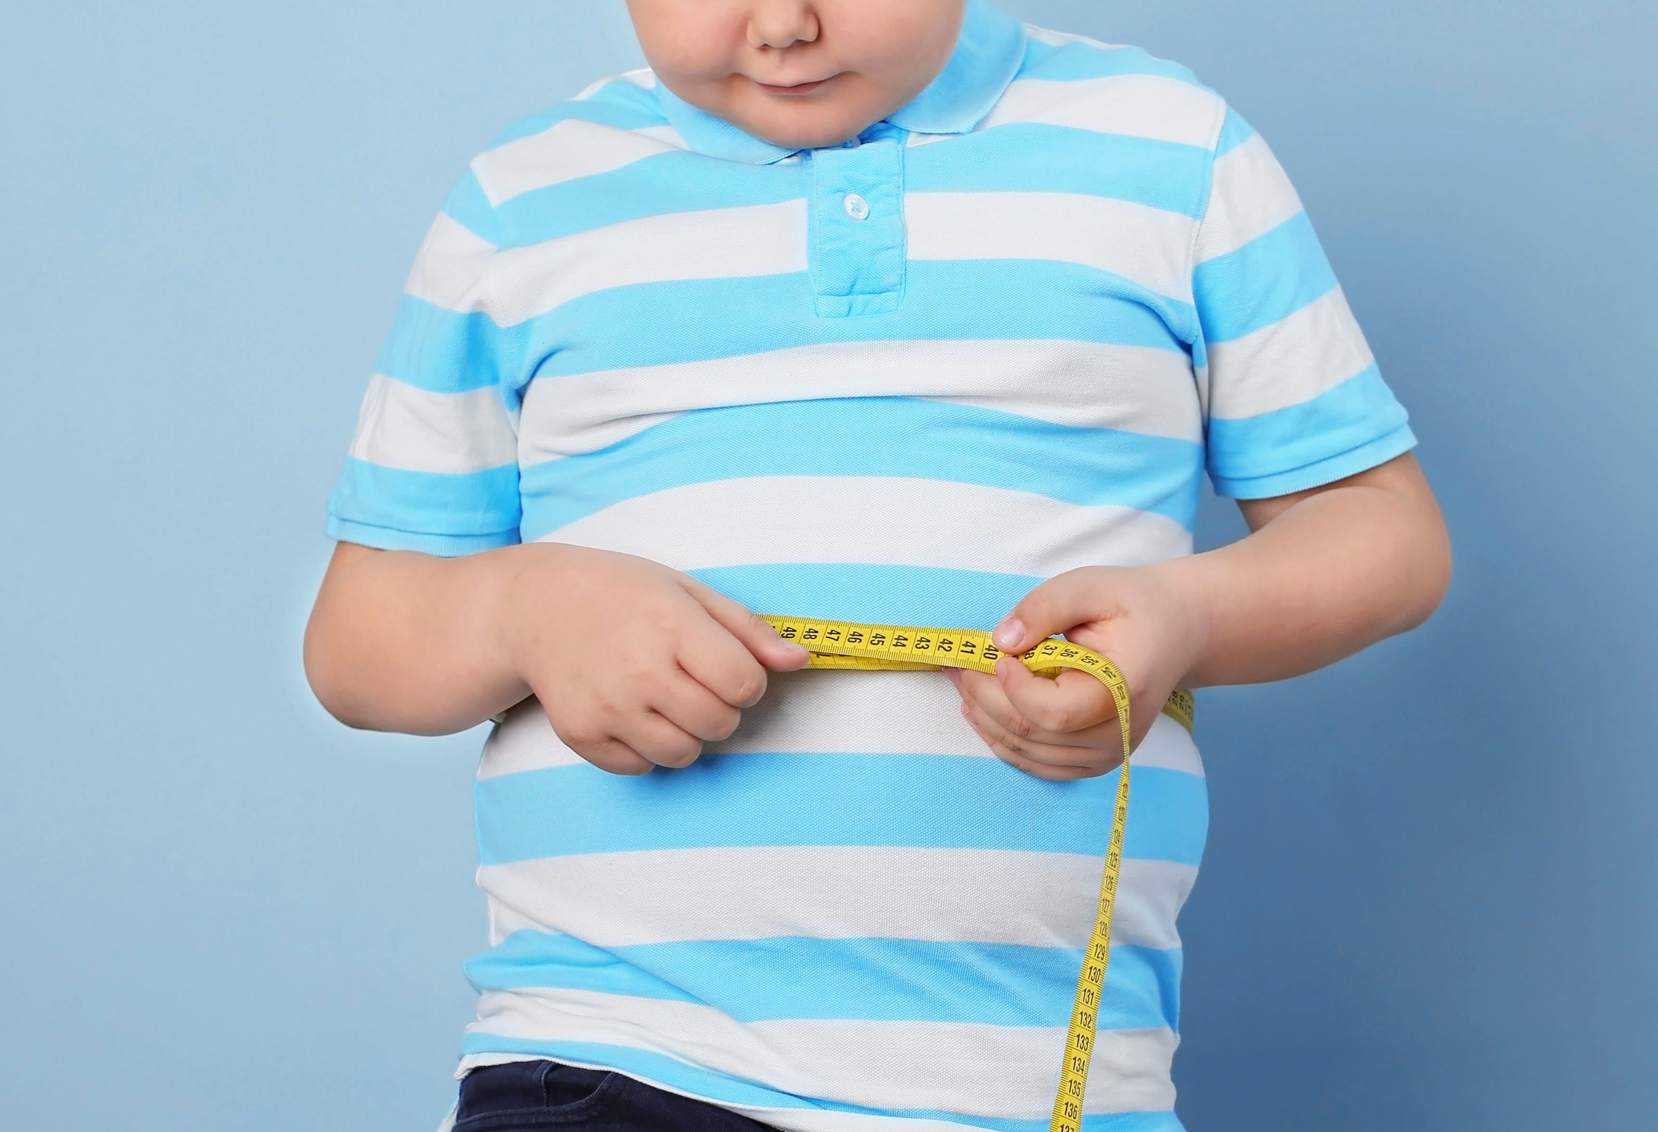 Entenda Os Problemas Que Podem Ser Causados Pela Obesidade Infantil